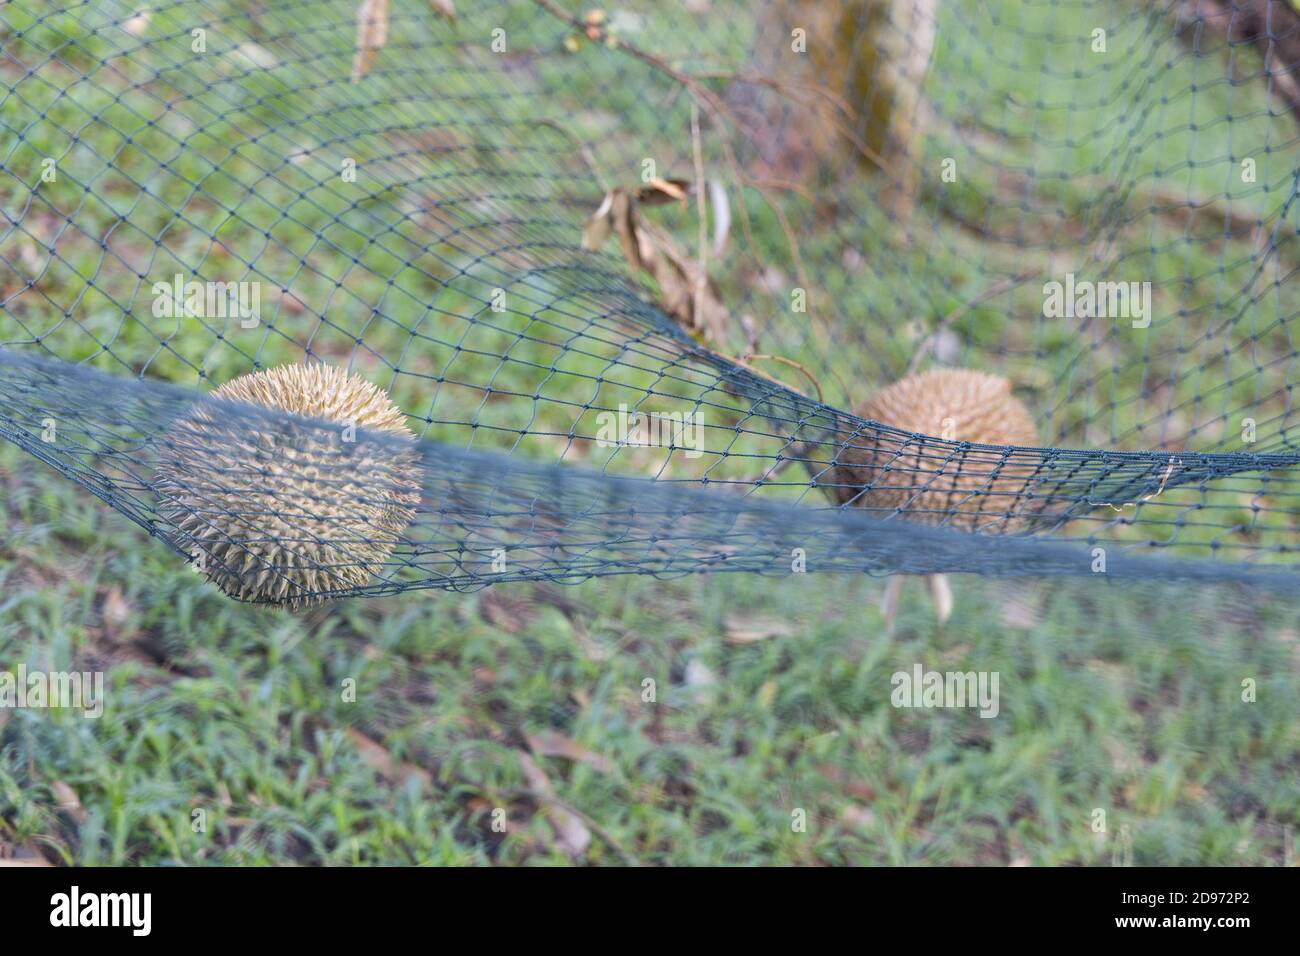 El durian maduro aterrizó en la red de seguridad para amortiguar el impacto de la caída. Foto de stock